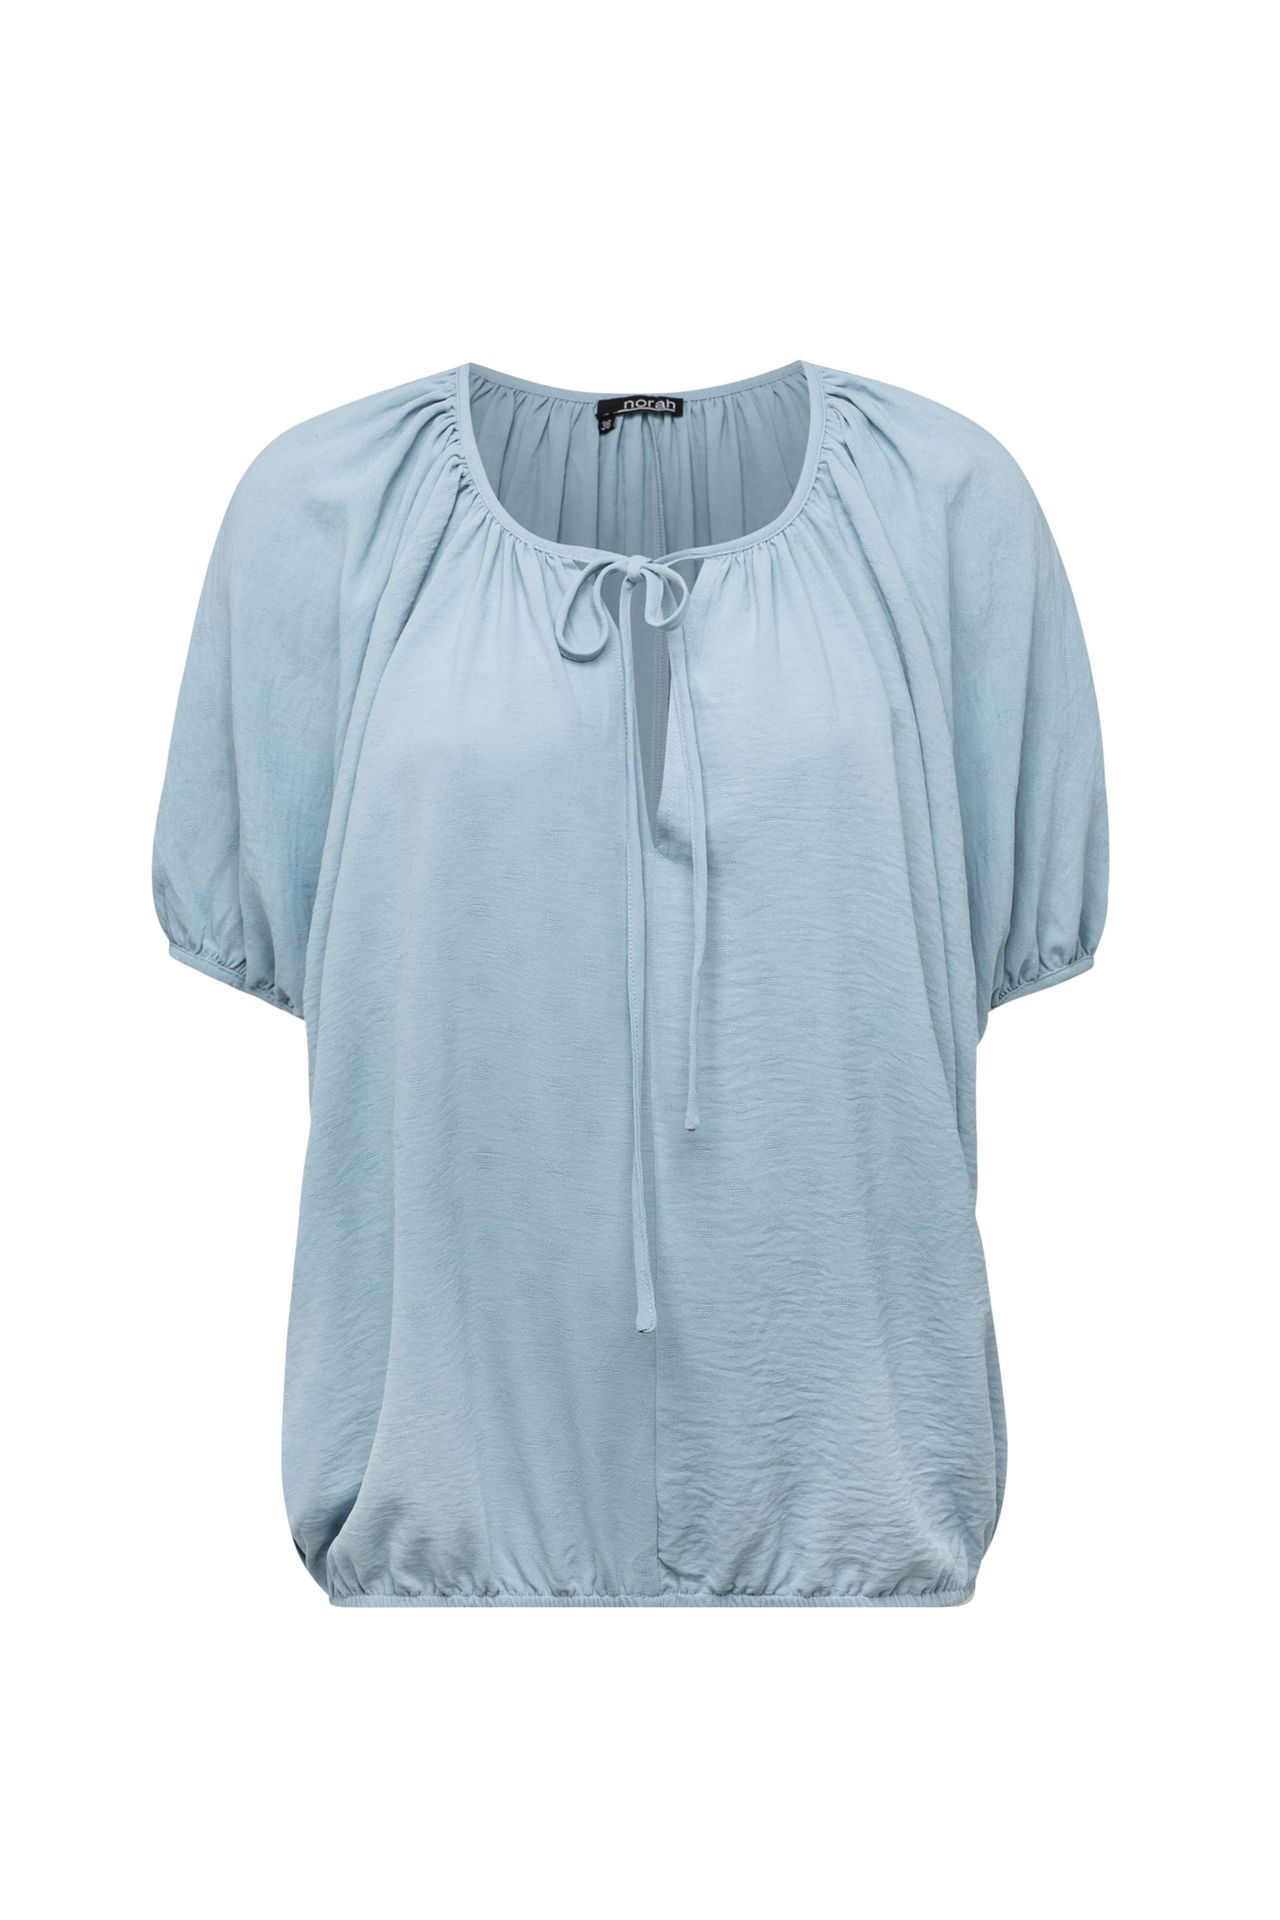 Norah Blauwe blouse met koordjes denim blue 213707-472